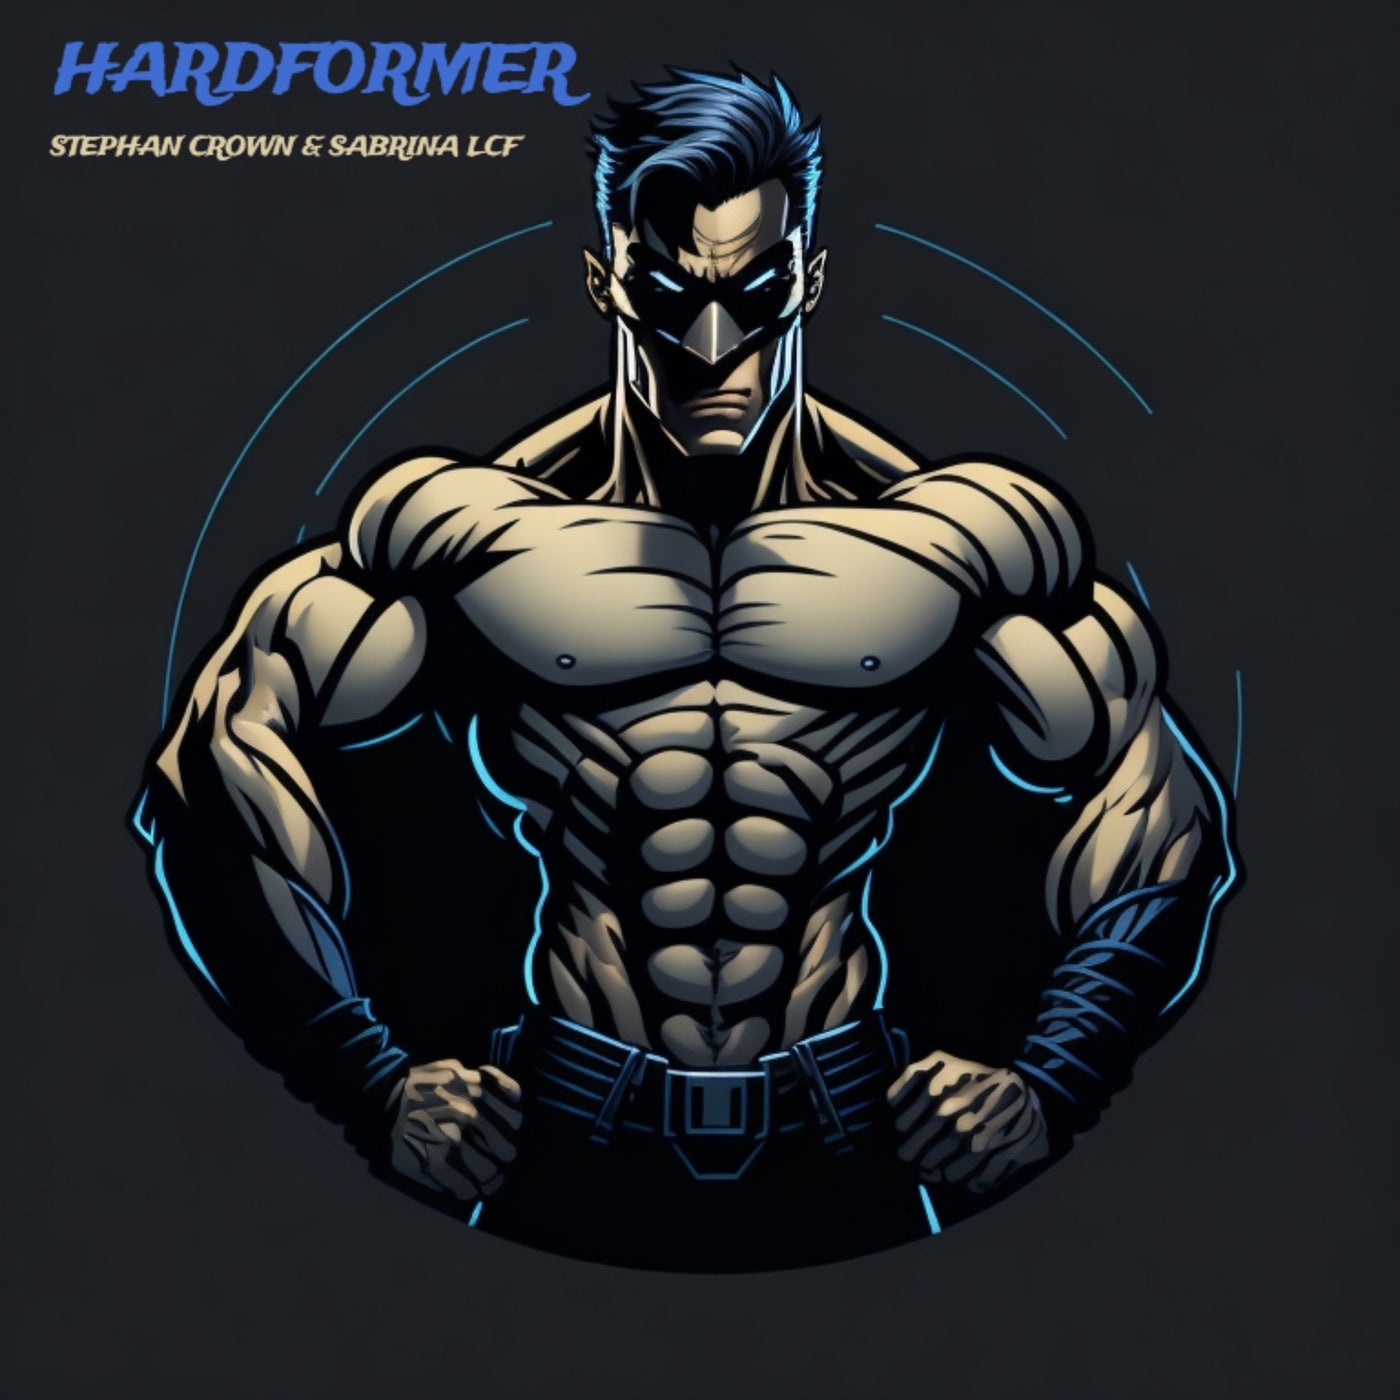 Hardformer